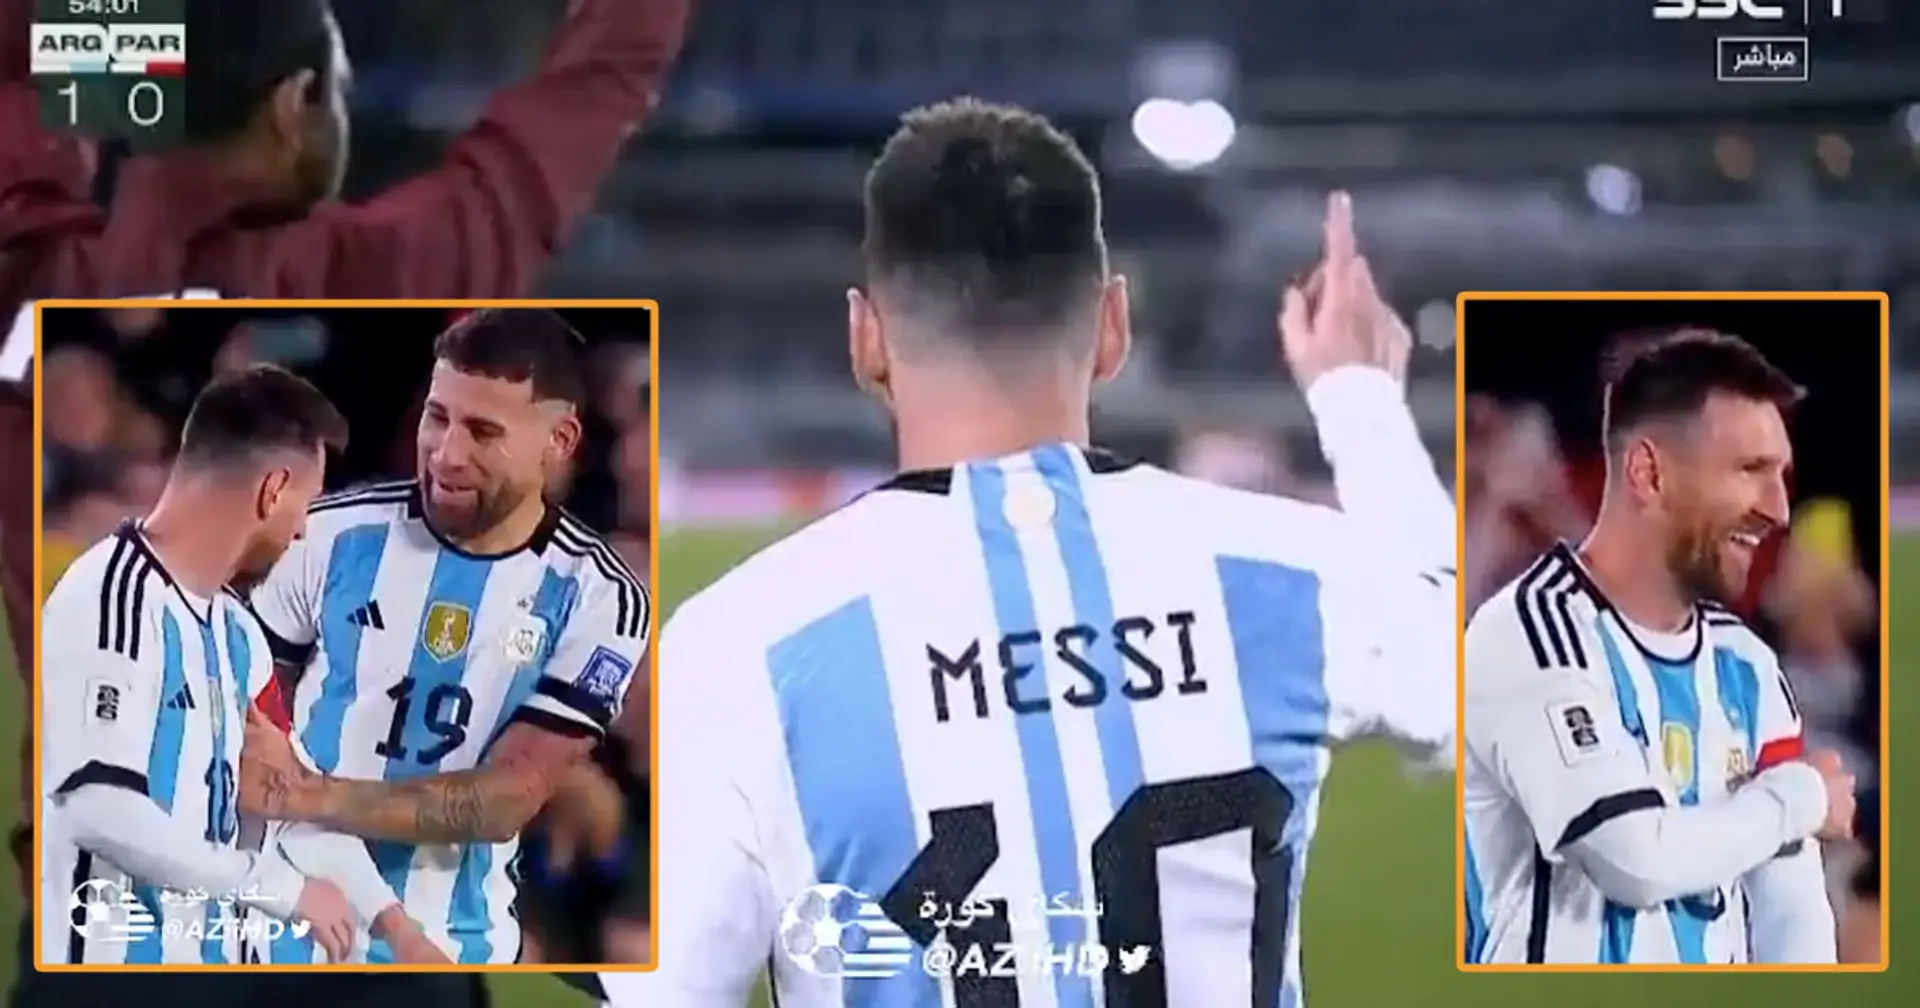 Filmé: l'humble Messi refuse de prendre le brassard lors du match Argentine contre Paraguay